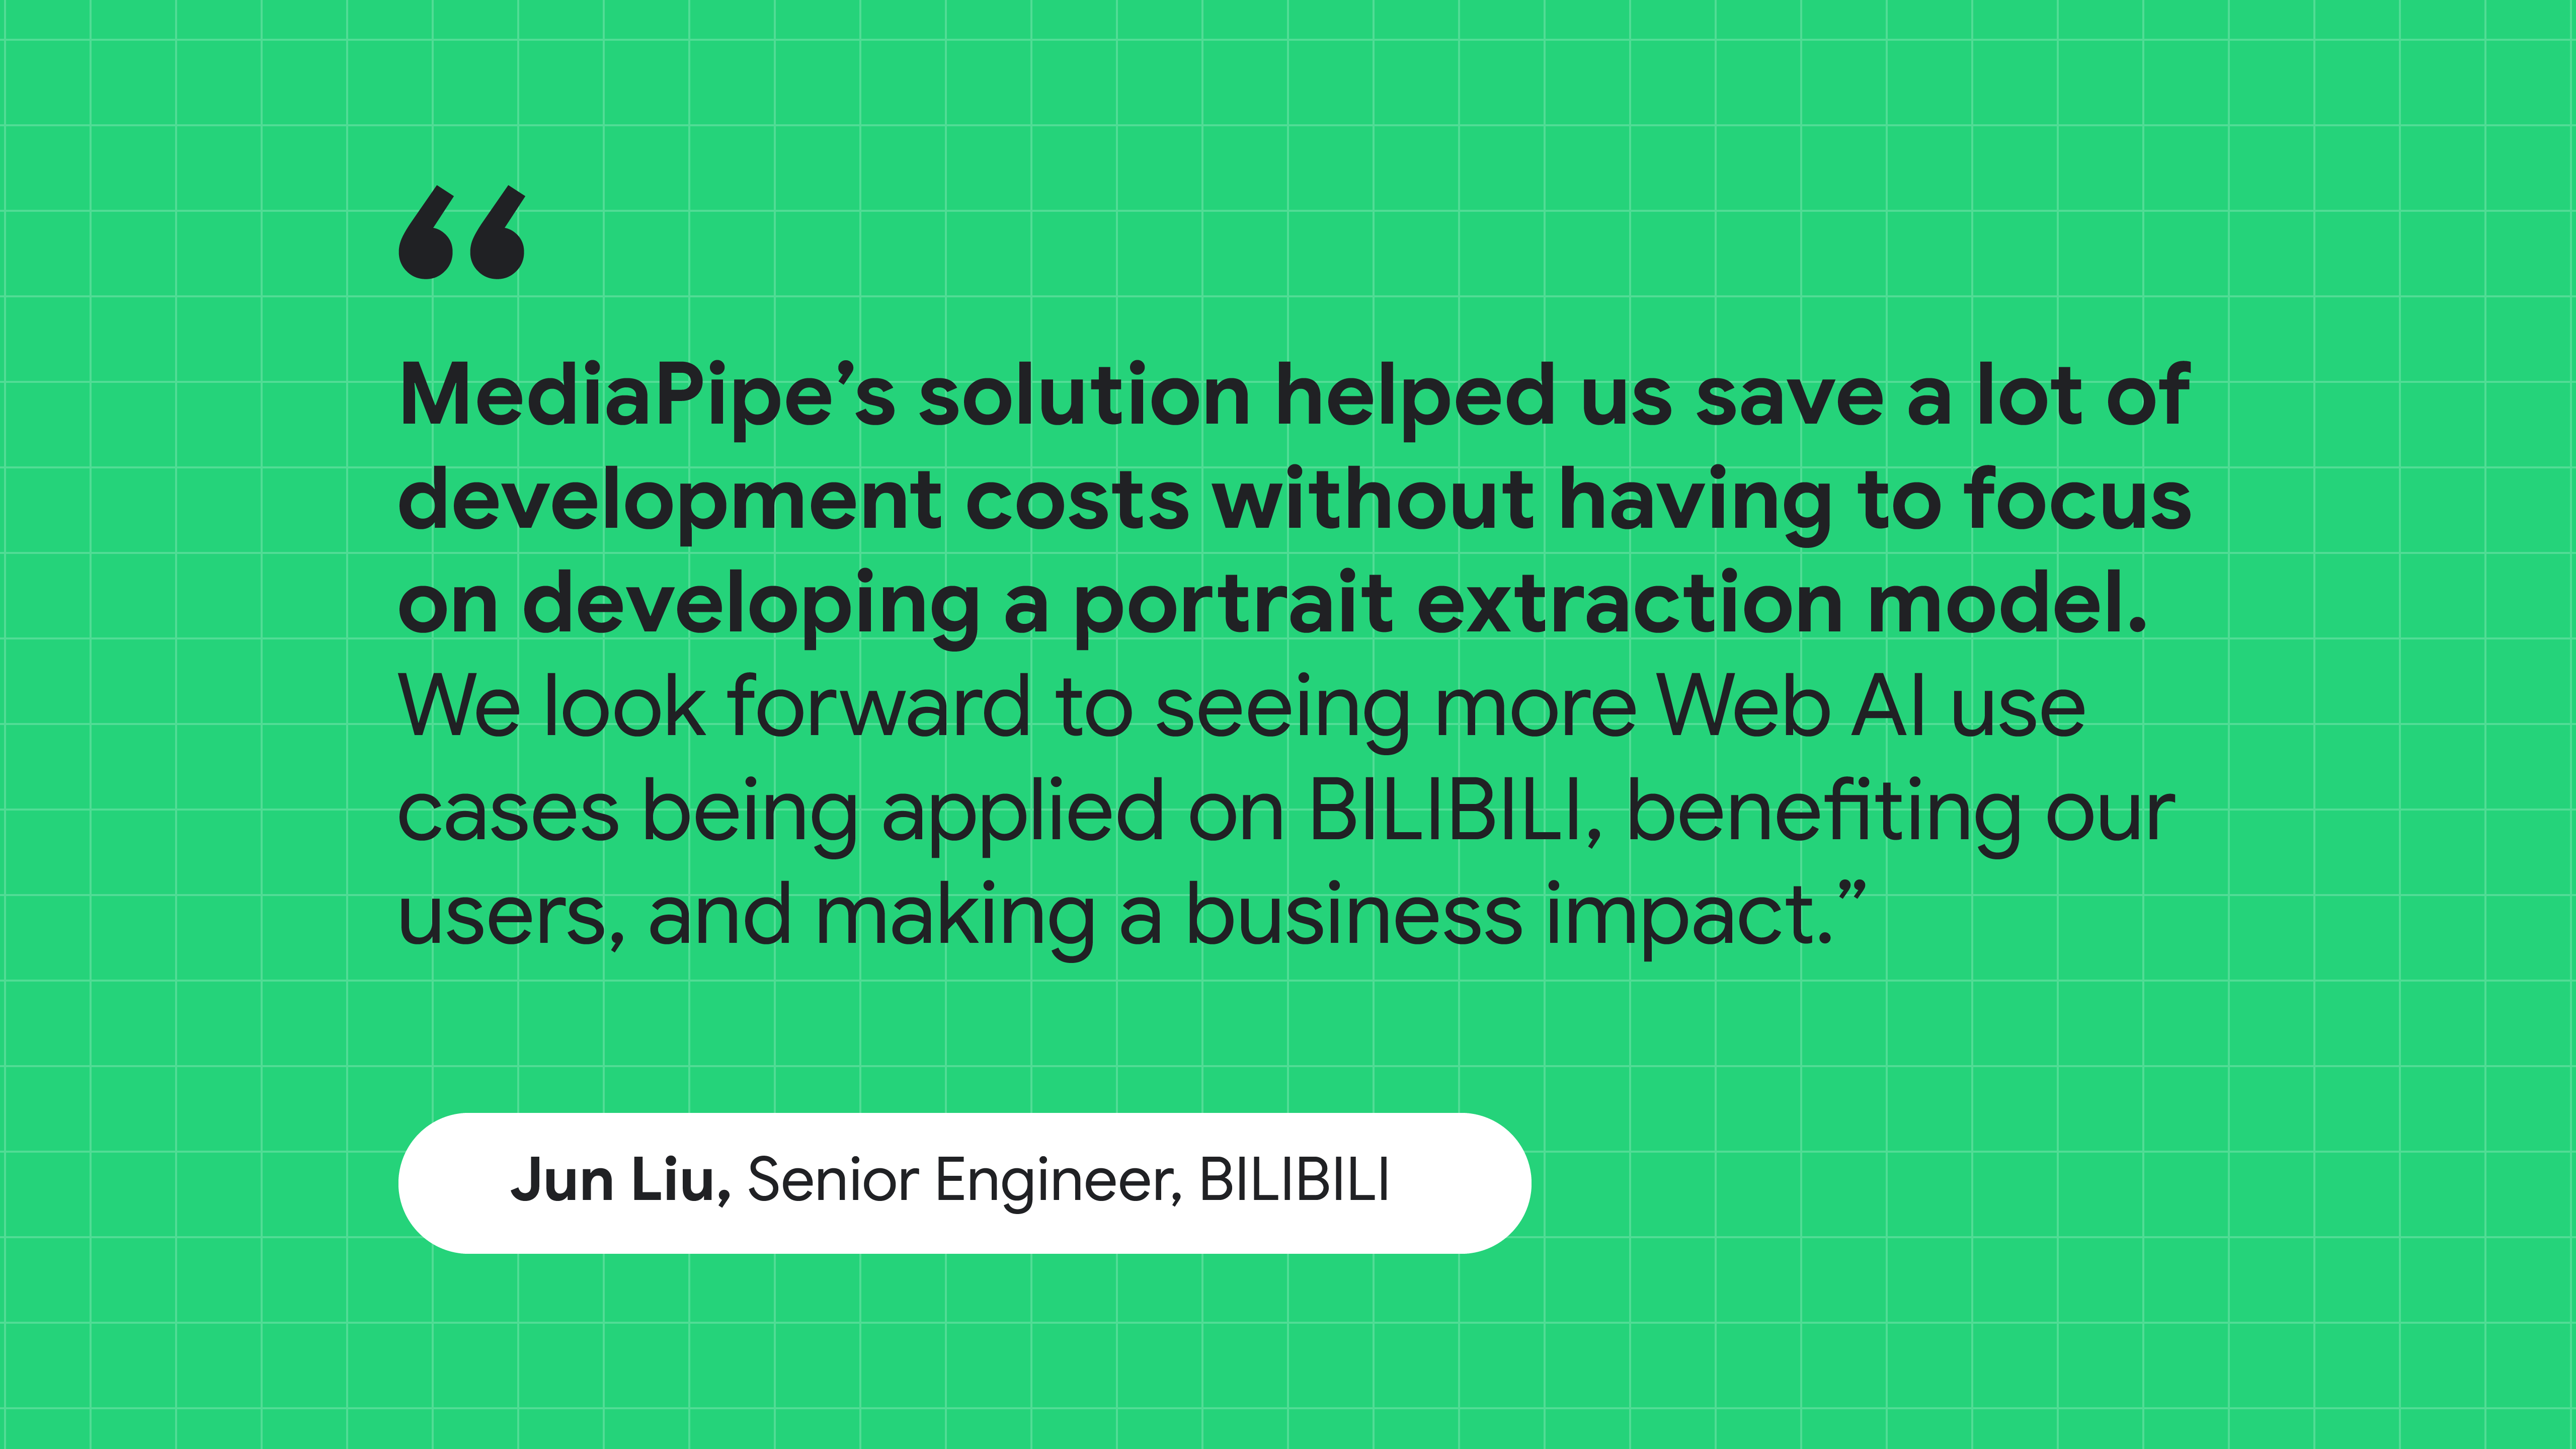 引述 BILIBILI 資深工程師 Jun Liu 的引言：MediaPipe 的解決方案幫助我們節省開發成本，而無需專注於建立肖像擷取模型。